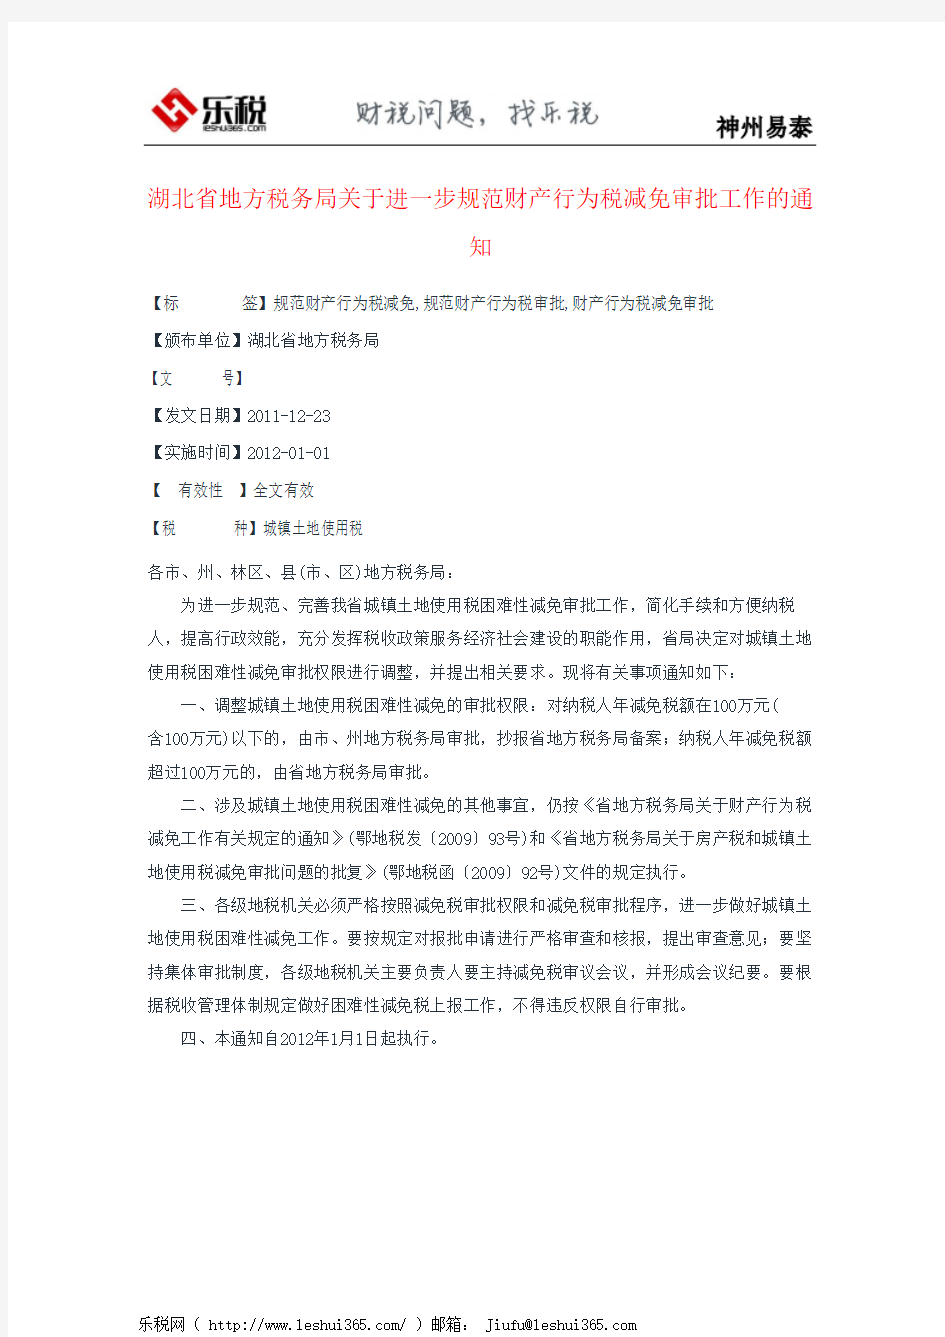 湖北省地方税务局关于进一步规范财产行为税减免审批工作的通知